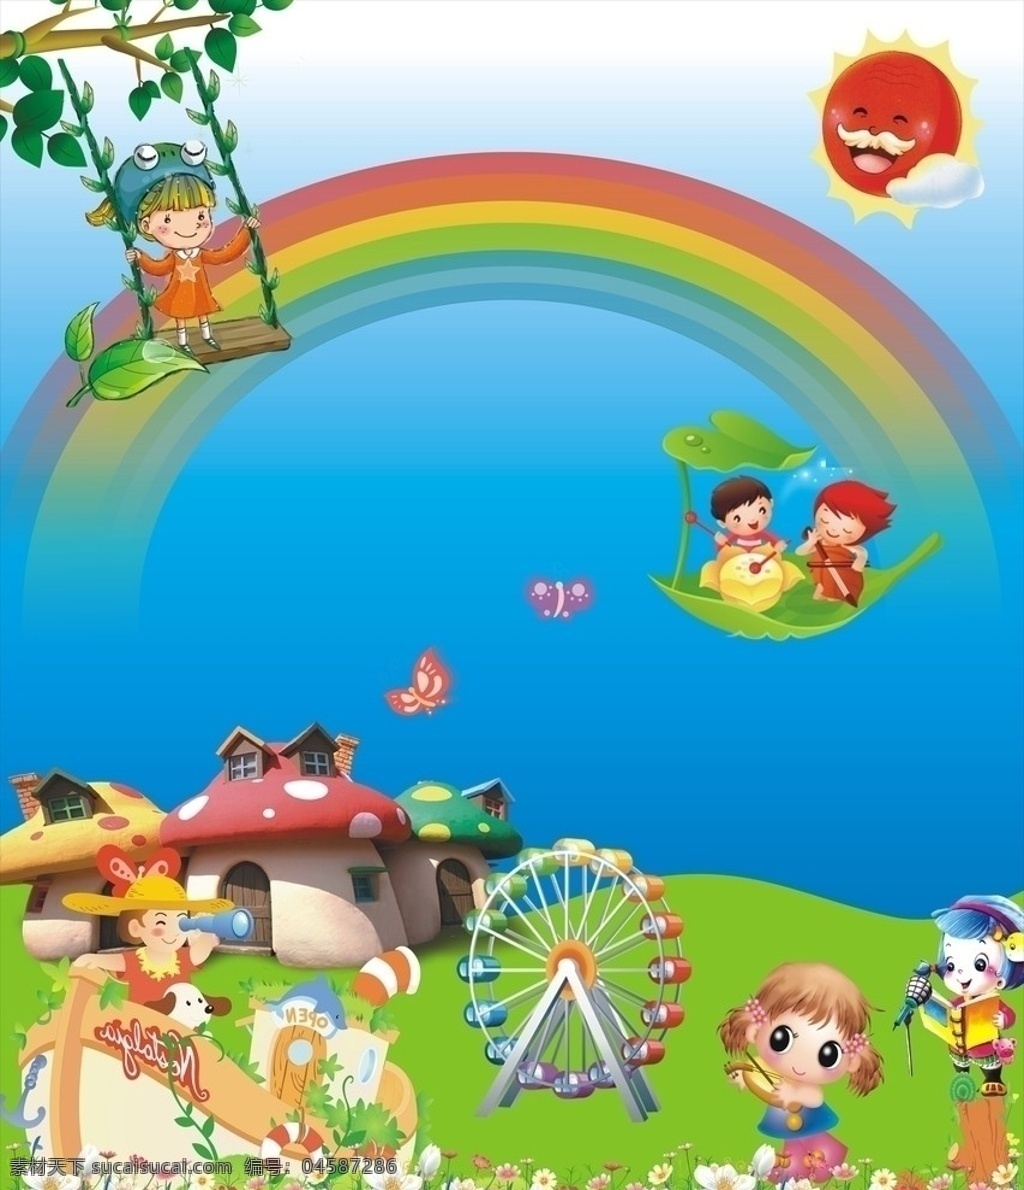 幼儿园 墙体广告 幼稚园 可爱的太阳 漂亮 矢量 彩虹 可爱 蘑菇 房子 花朵 摩天轮 海报